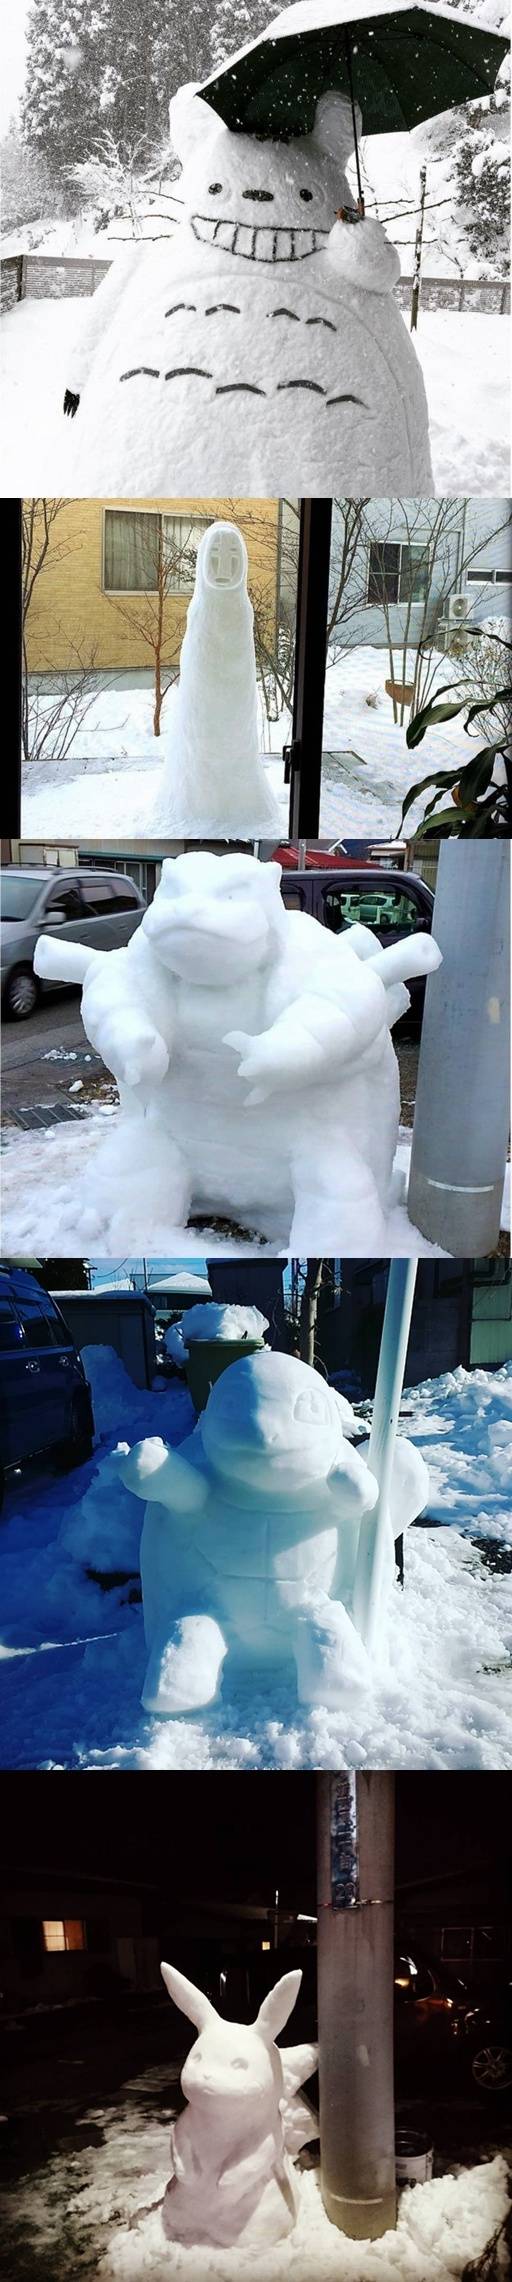 札幌雪季举办在即,居民发挥创意堆出各种雪雕